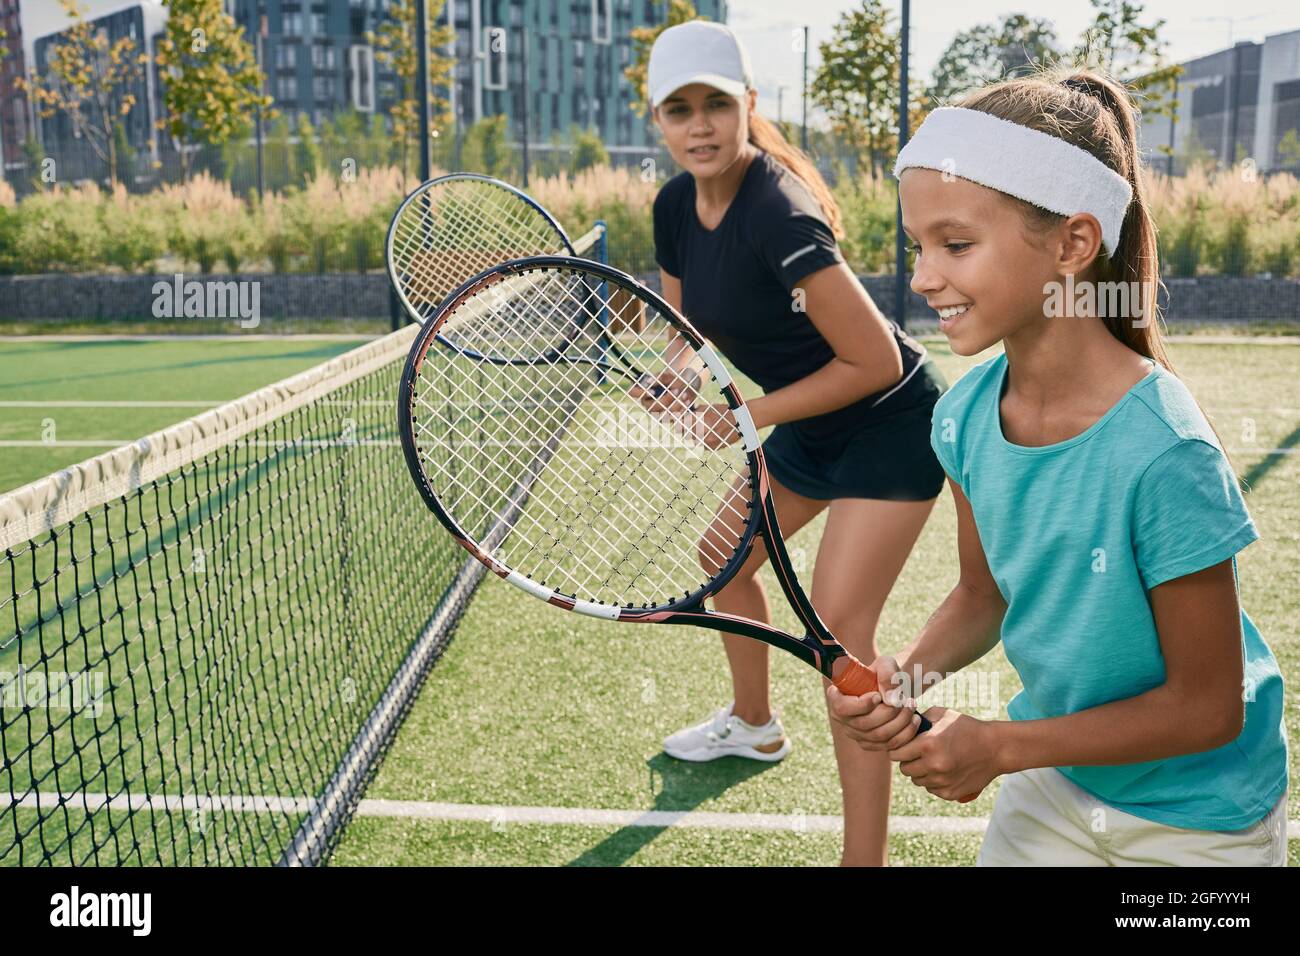 Ragazza piccola positiva che tiene un racket mentre impara a giocare a tennis con il suo allenatore femminile sul campo all'aperto. Istruttore individuale a un bambino per i tenni Foto Stock